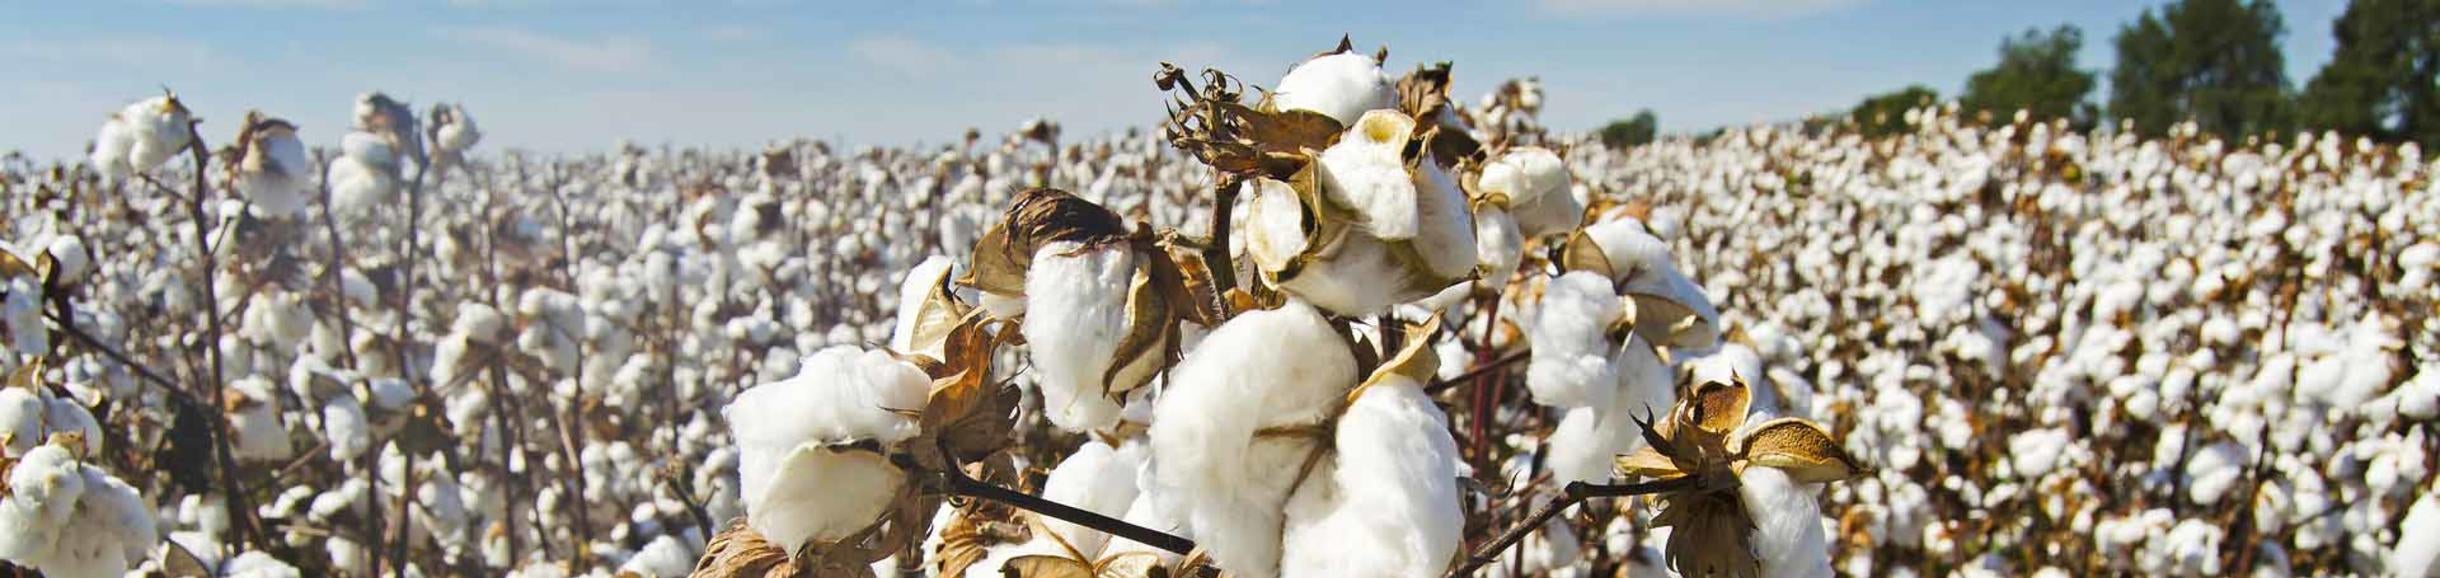 Cotton field, pixabay.com